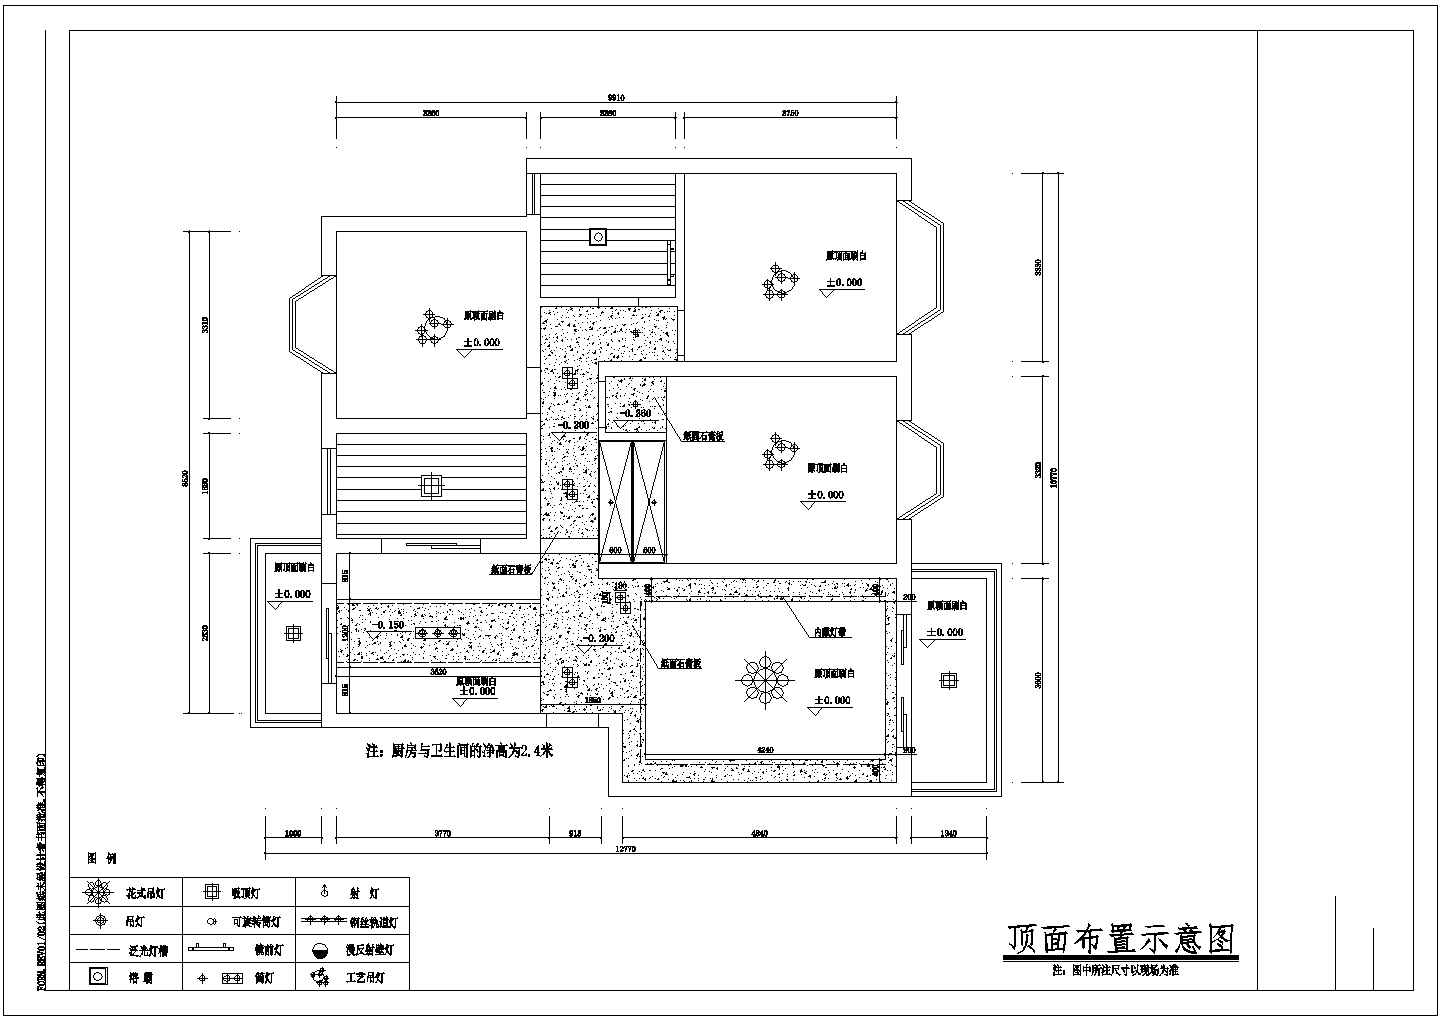 上海金文有限公司在科技园人才公寓室内家居装修设计方案cad施工图